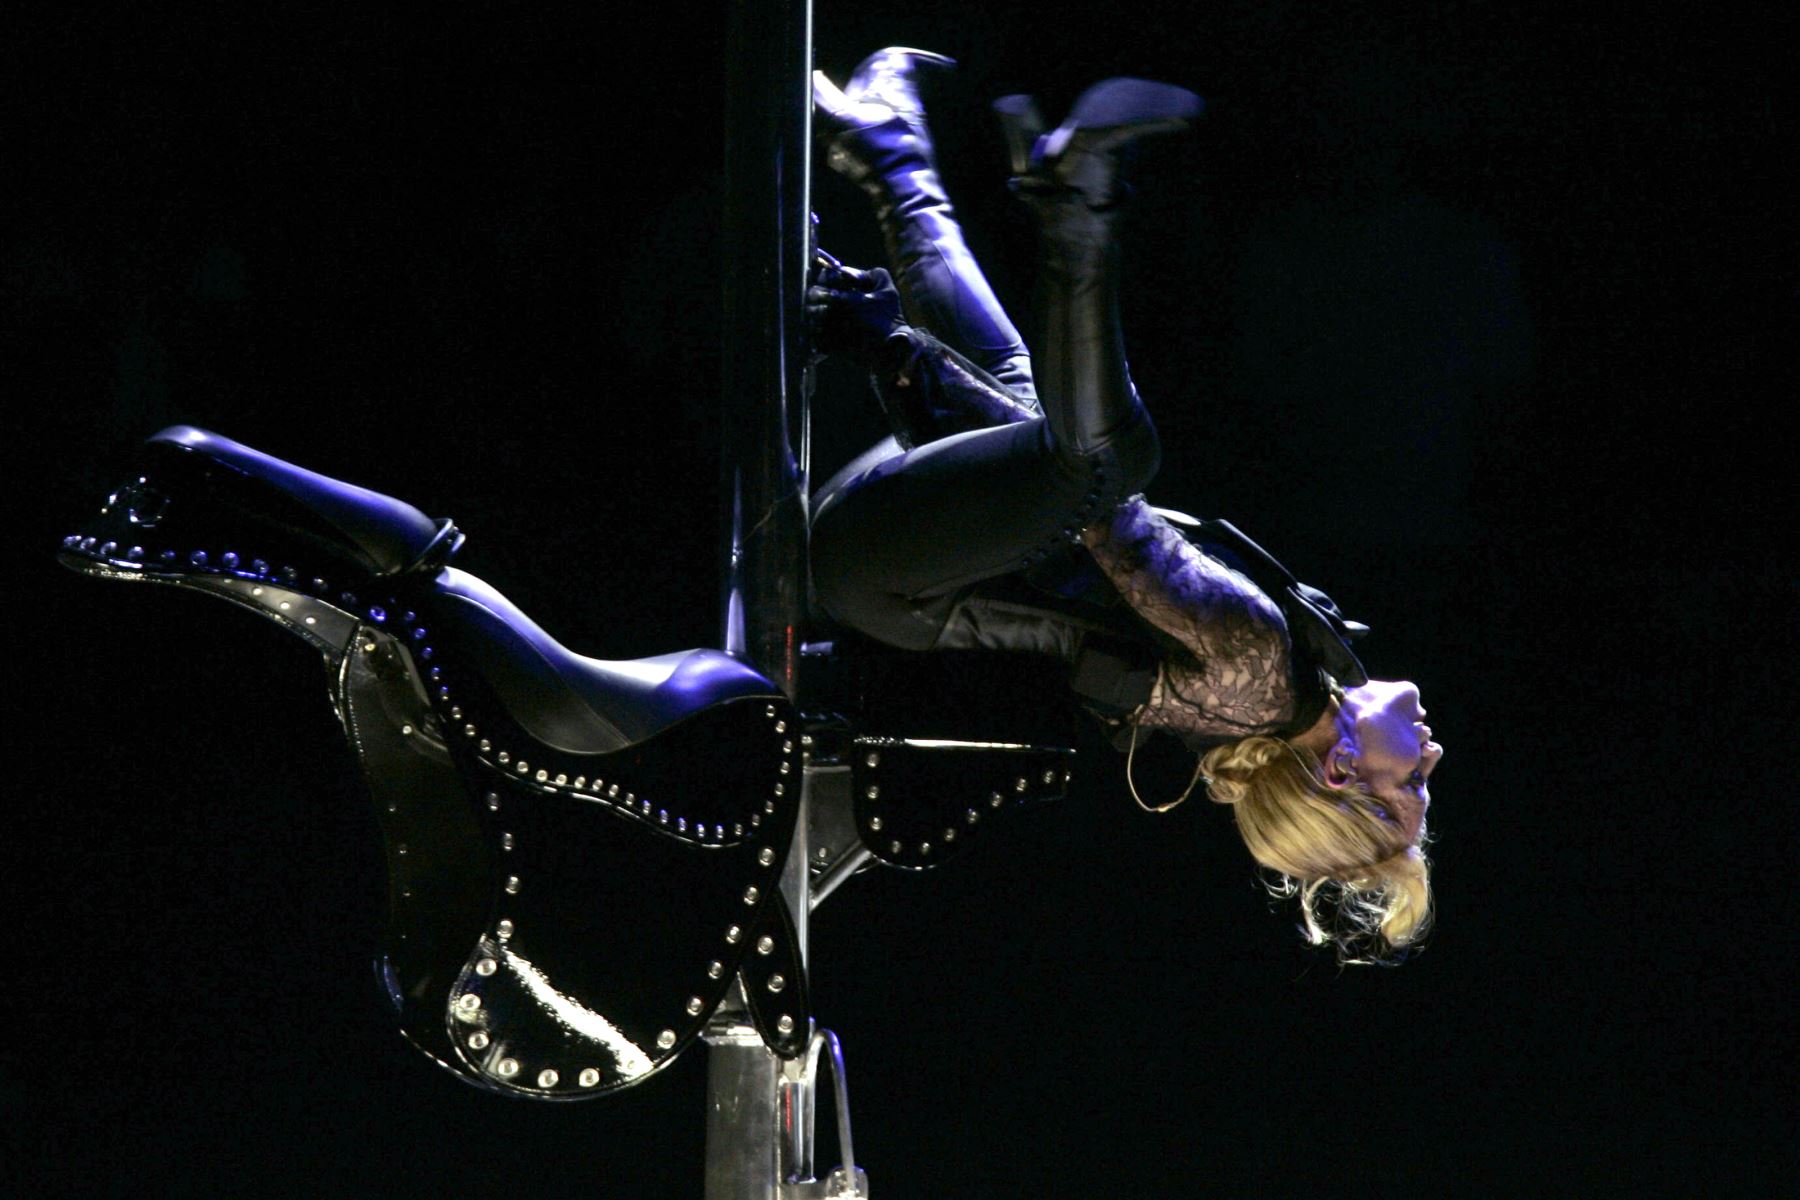 La estrella pop estadounidense Madonna se presenta en el escenario de Bercy en París, el 27 de agosto de 2006, como parte de su "gira de confesiones". AFP